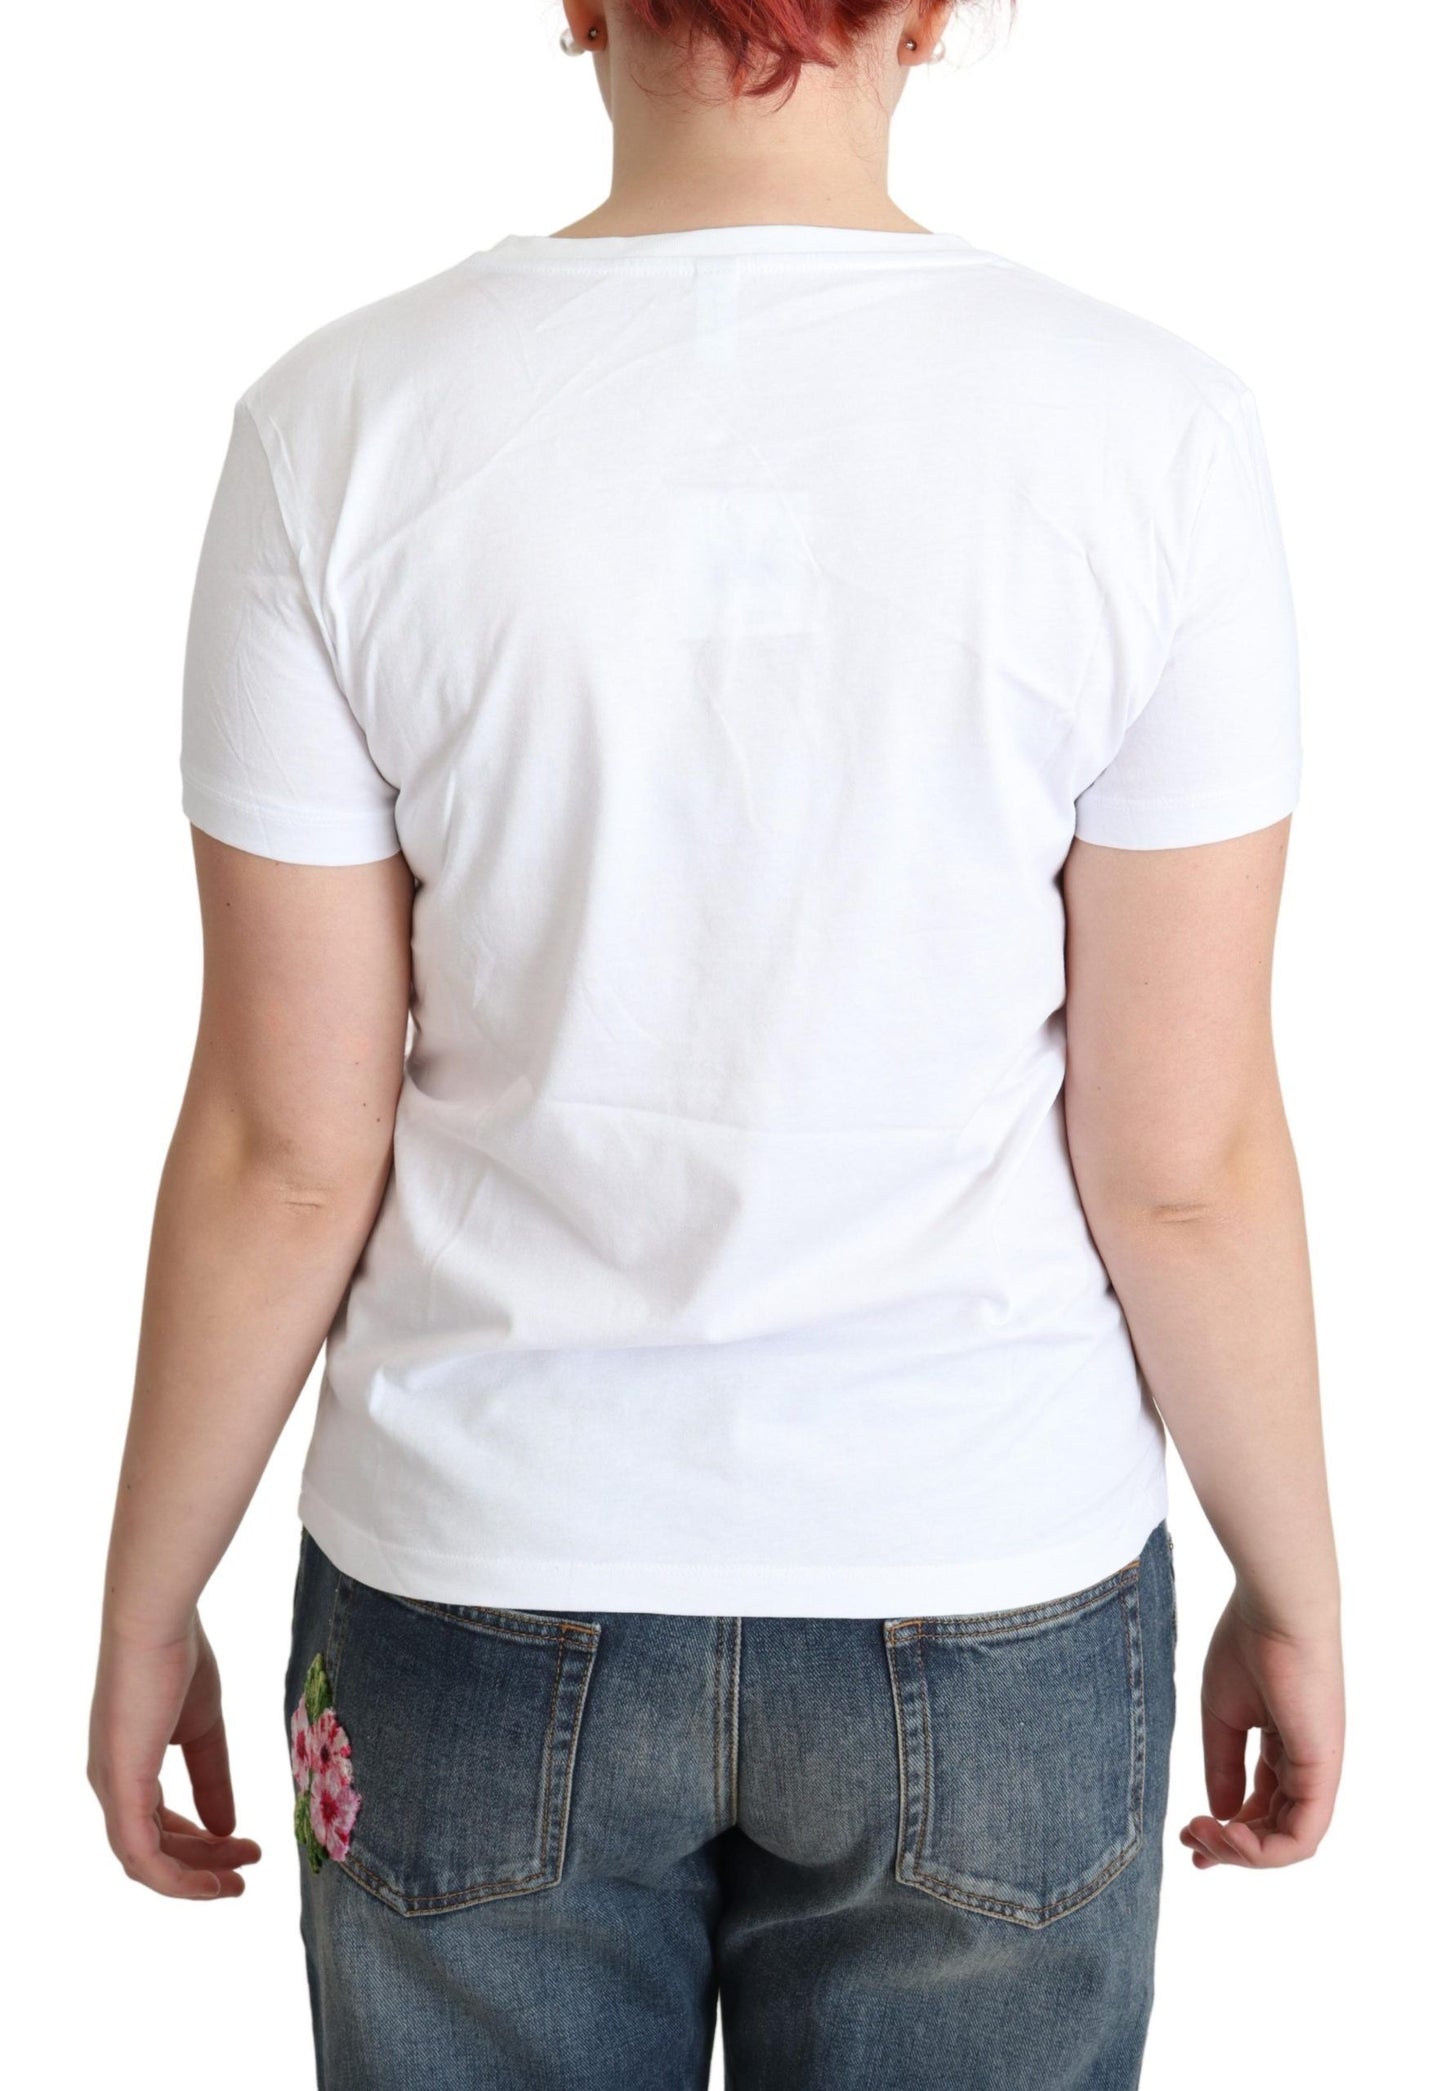 T-shirt à imprimé alphabet de coton blanc moschino t-shirt